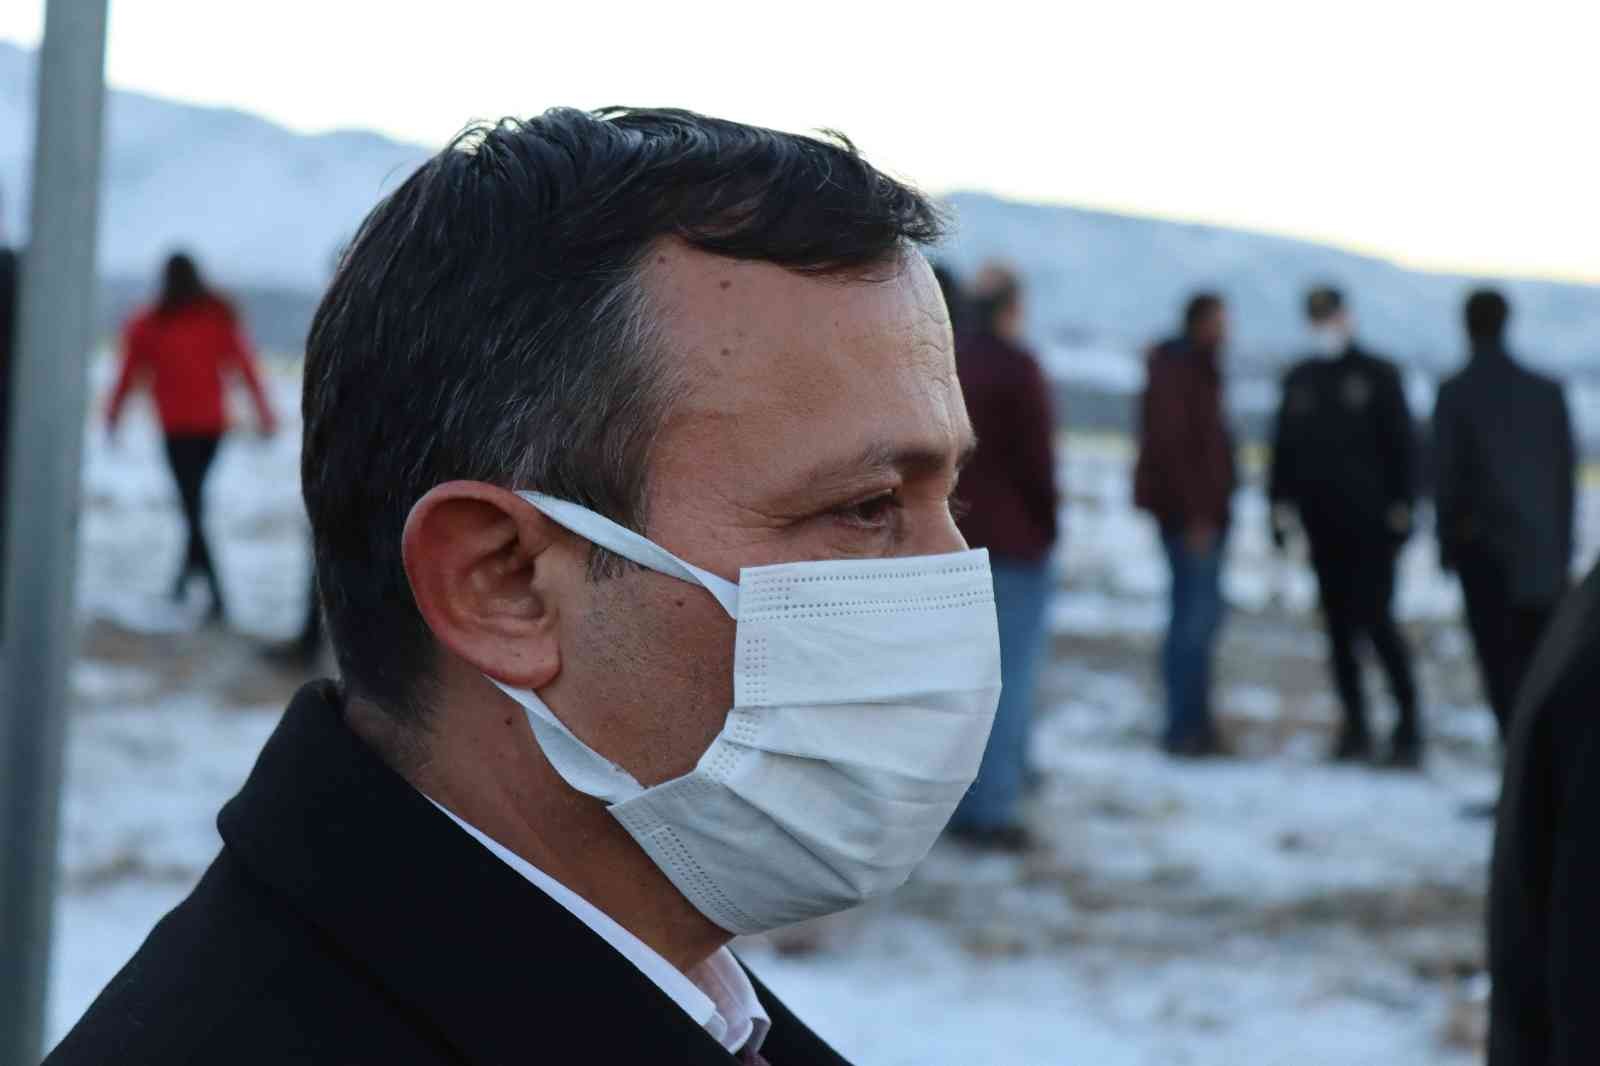 Kaza yerine gelen ERÜ Rektörü gözyaşlarını tutamadı #kayseri